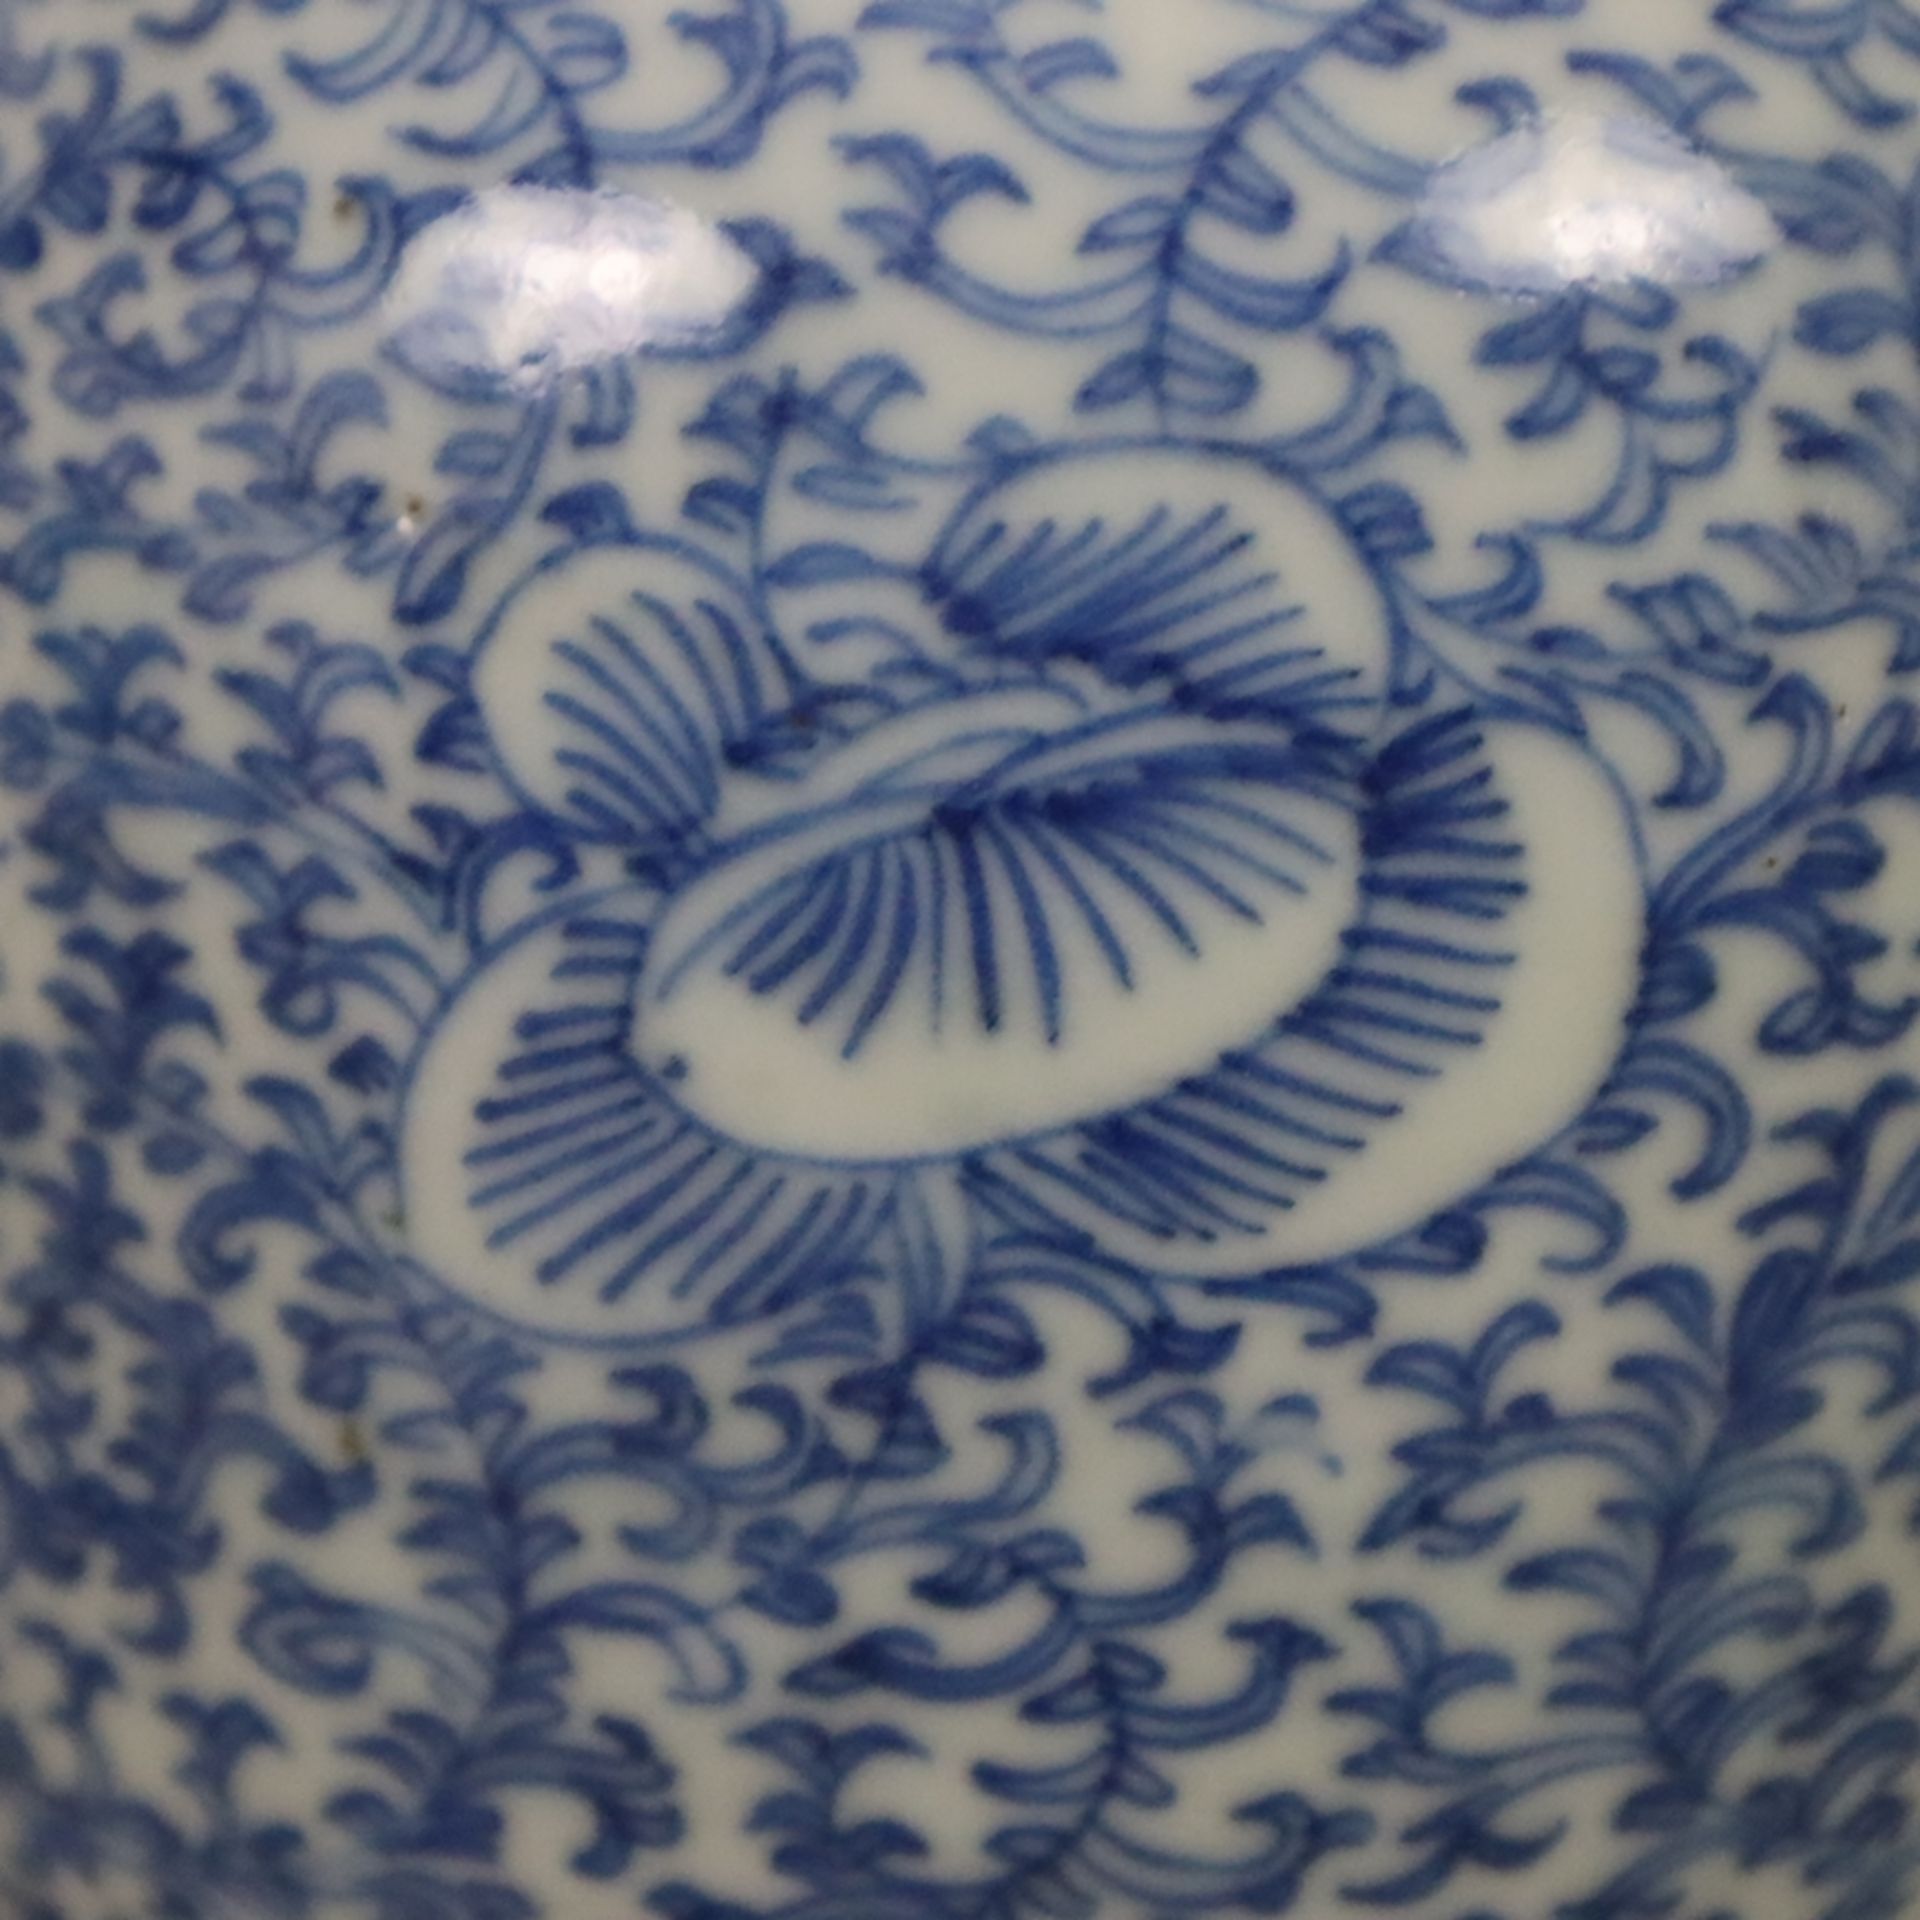 Blau-weiße Balustervase - China, ausgehende Qing-Dynastie, spätes 19. Jh., sog. „Hochzeitsvase“, au - Bild 6 aus 7